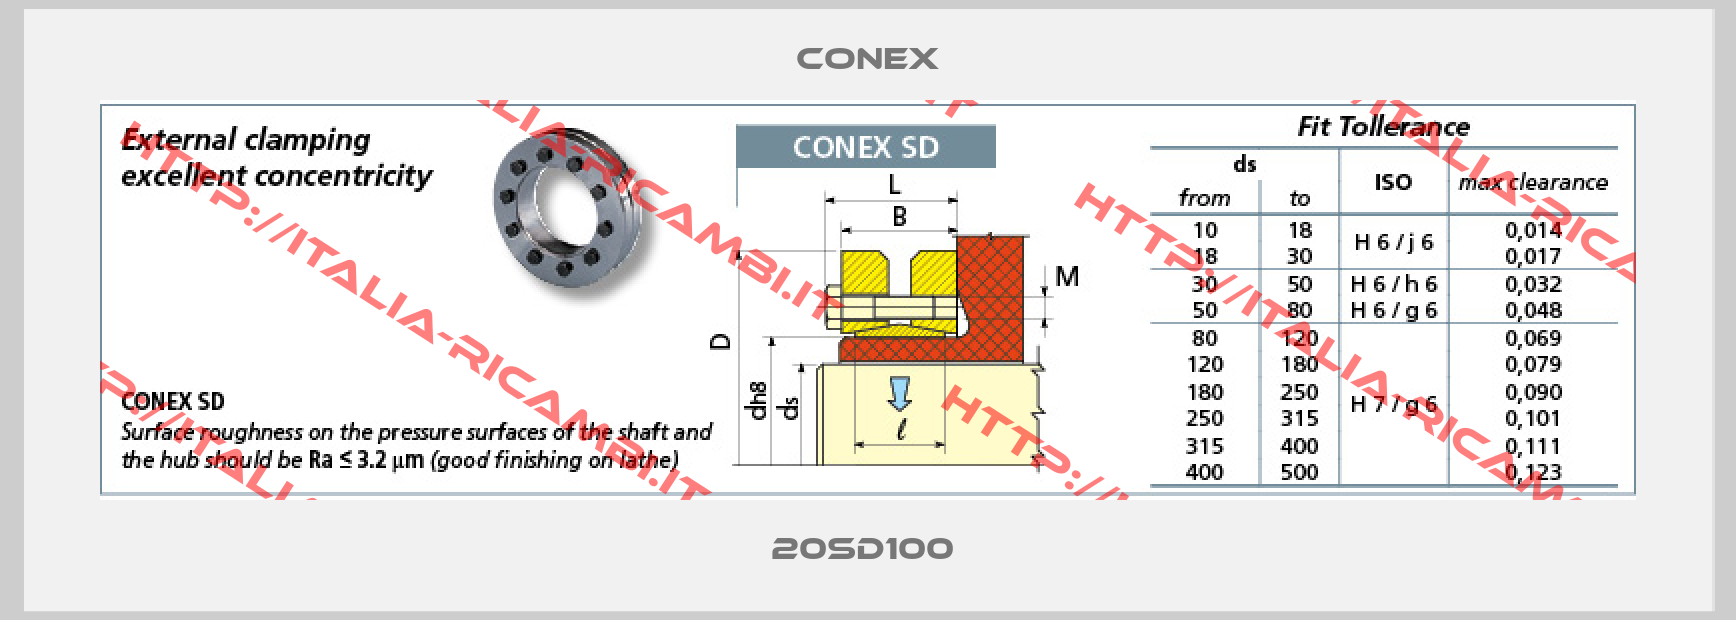 CONEX-20SD100 